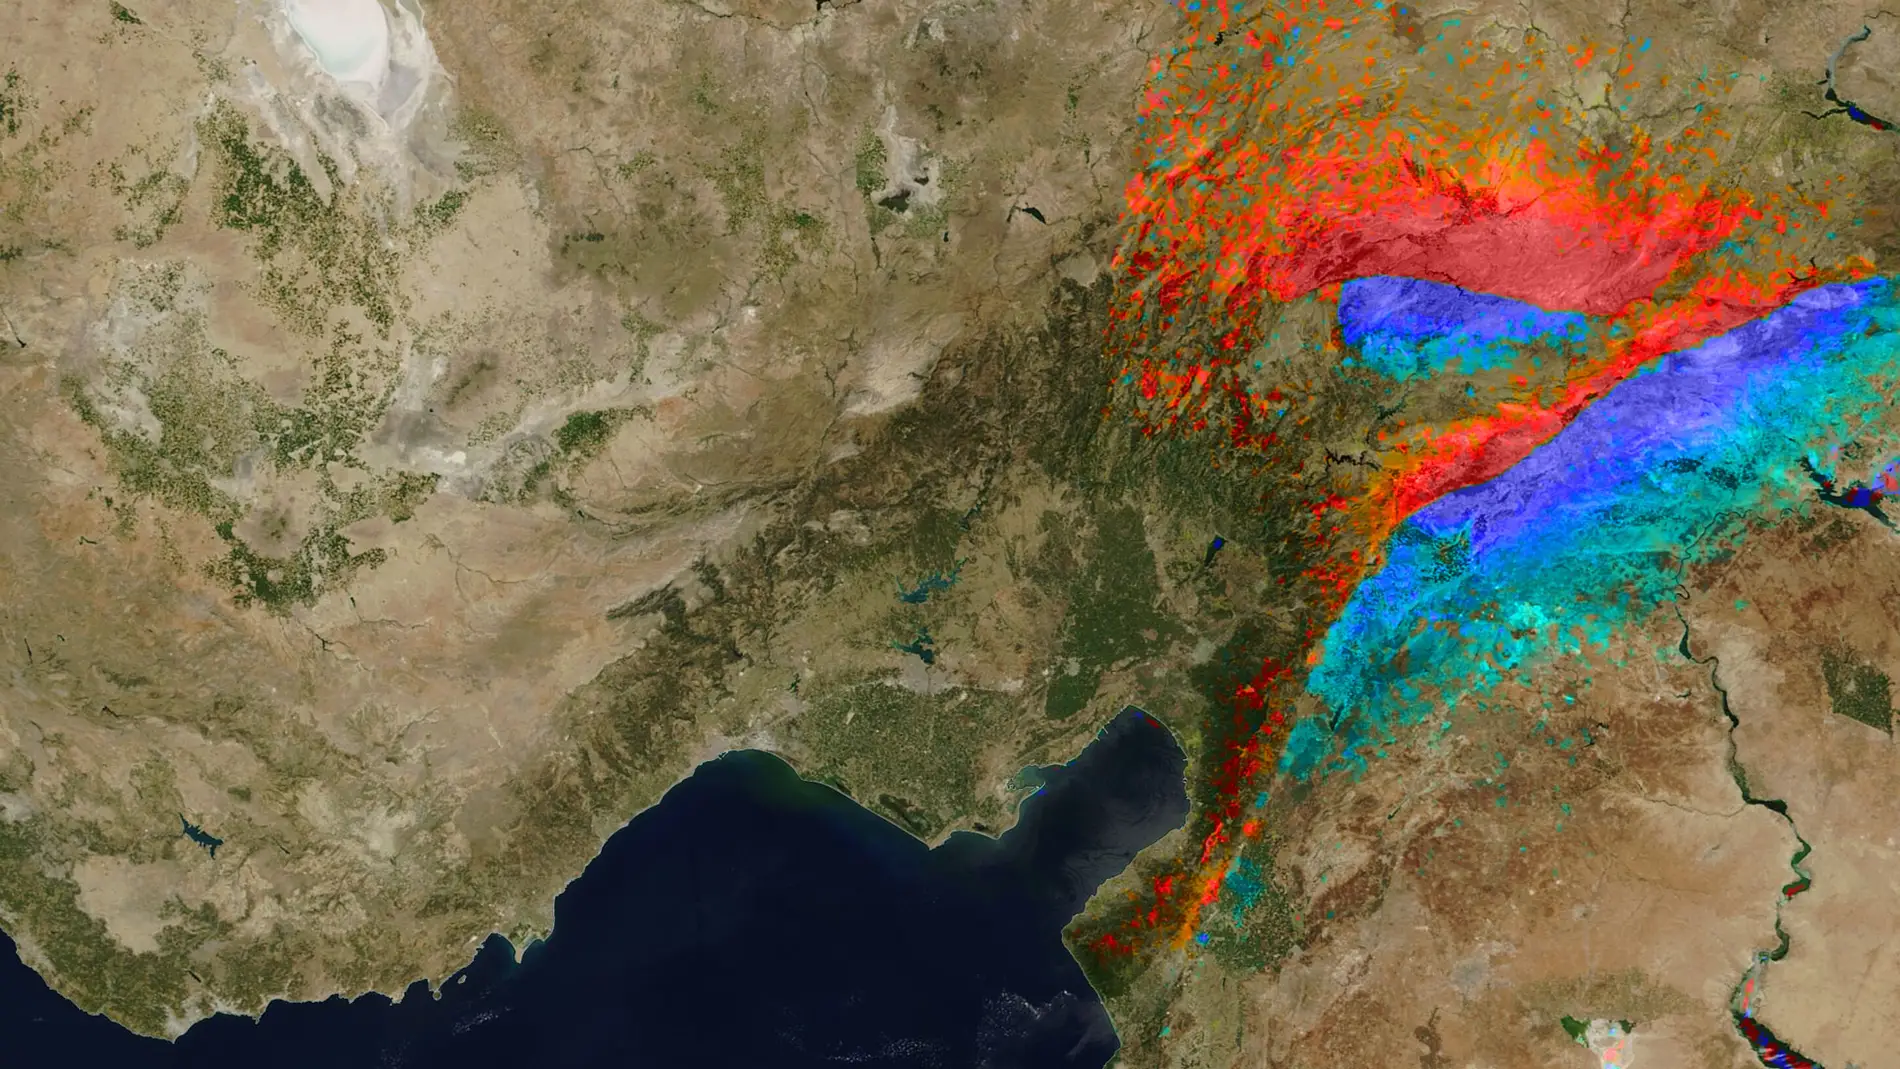 El terremoto de Turquía y Siria desplazó la superficie terrestre 6 metros